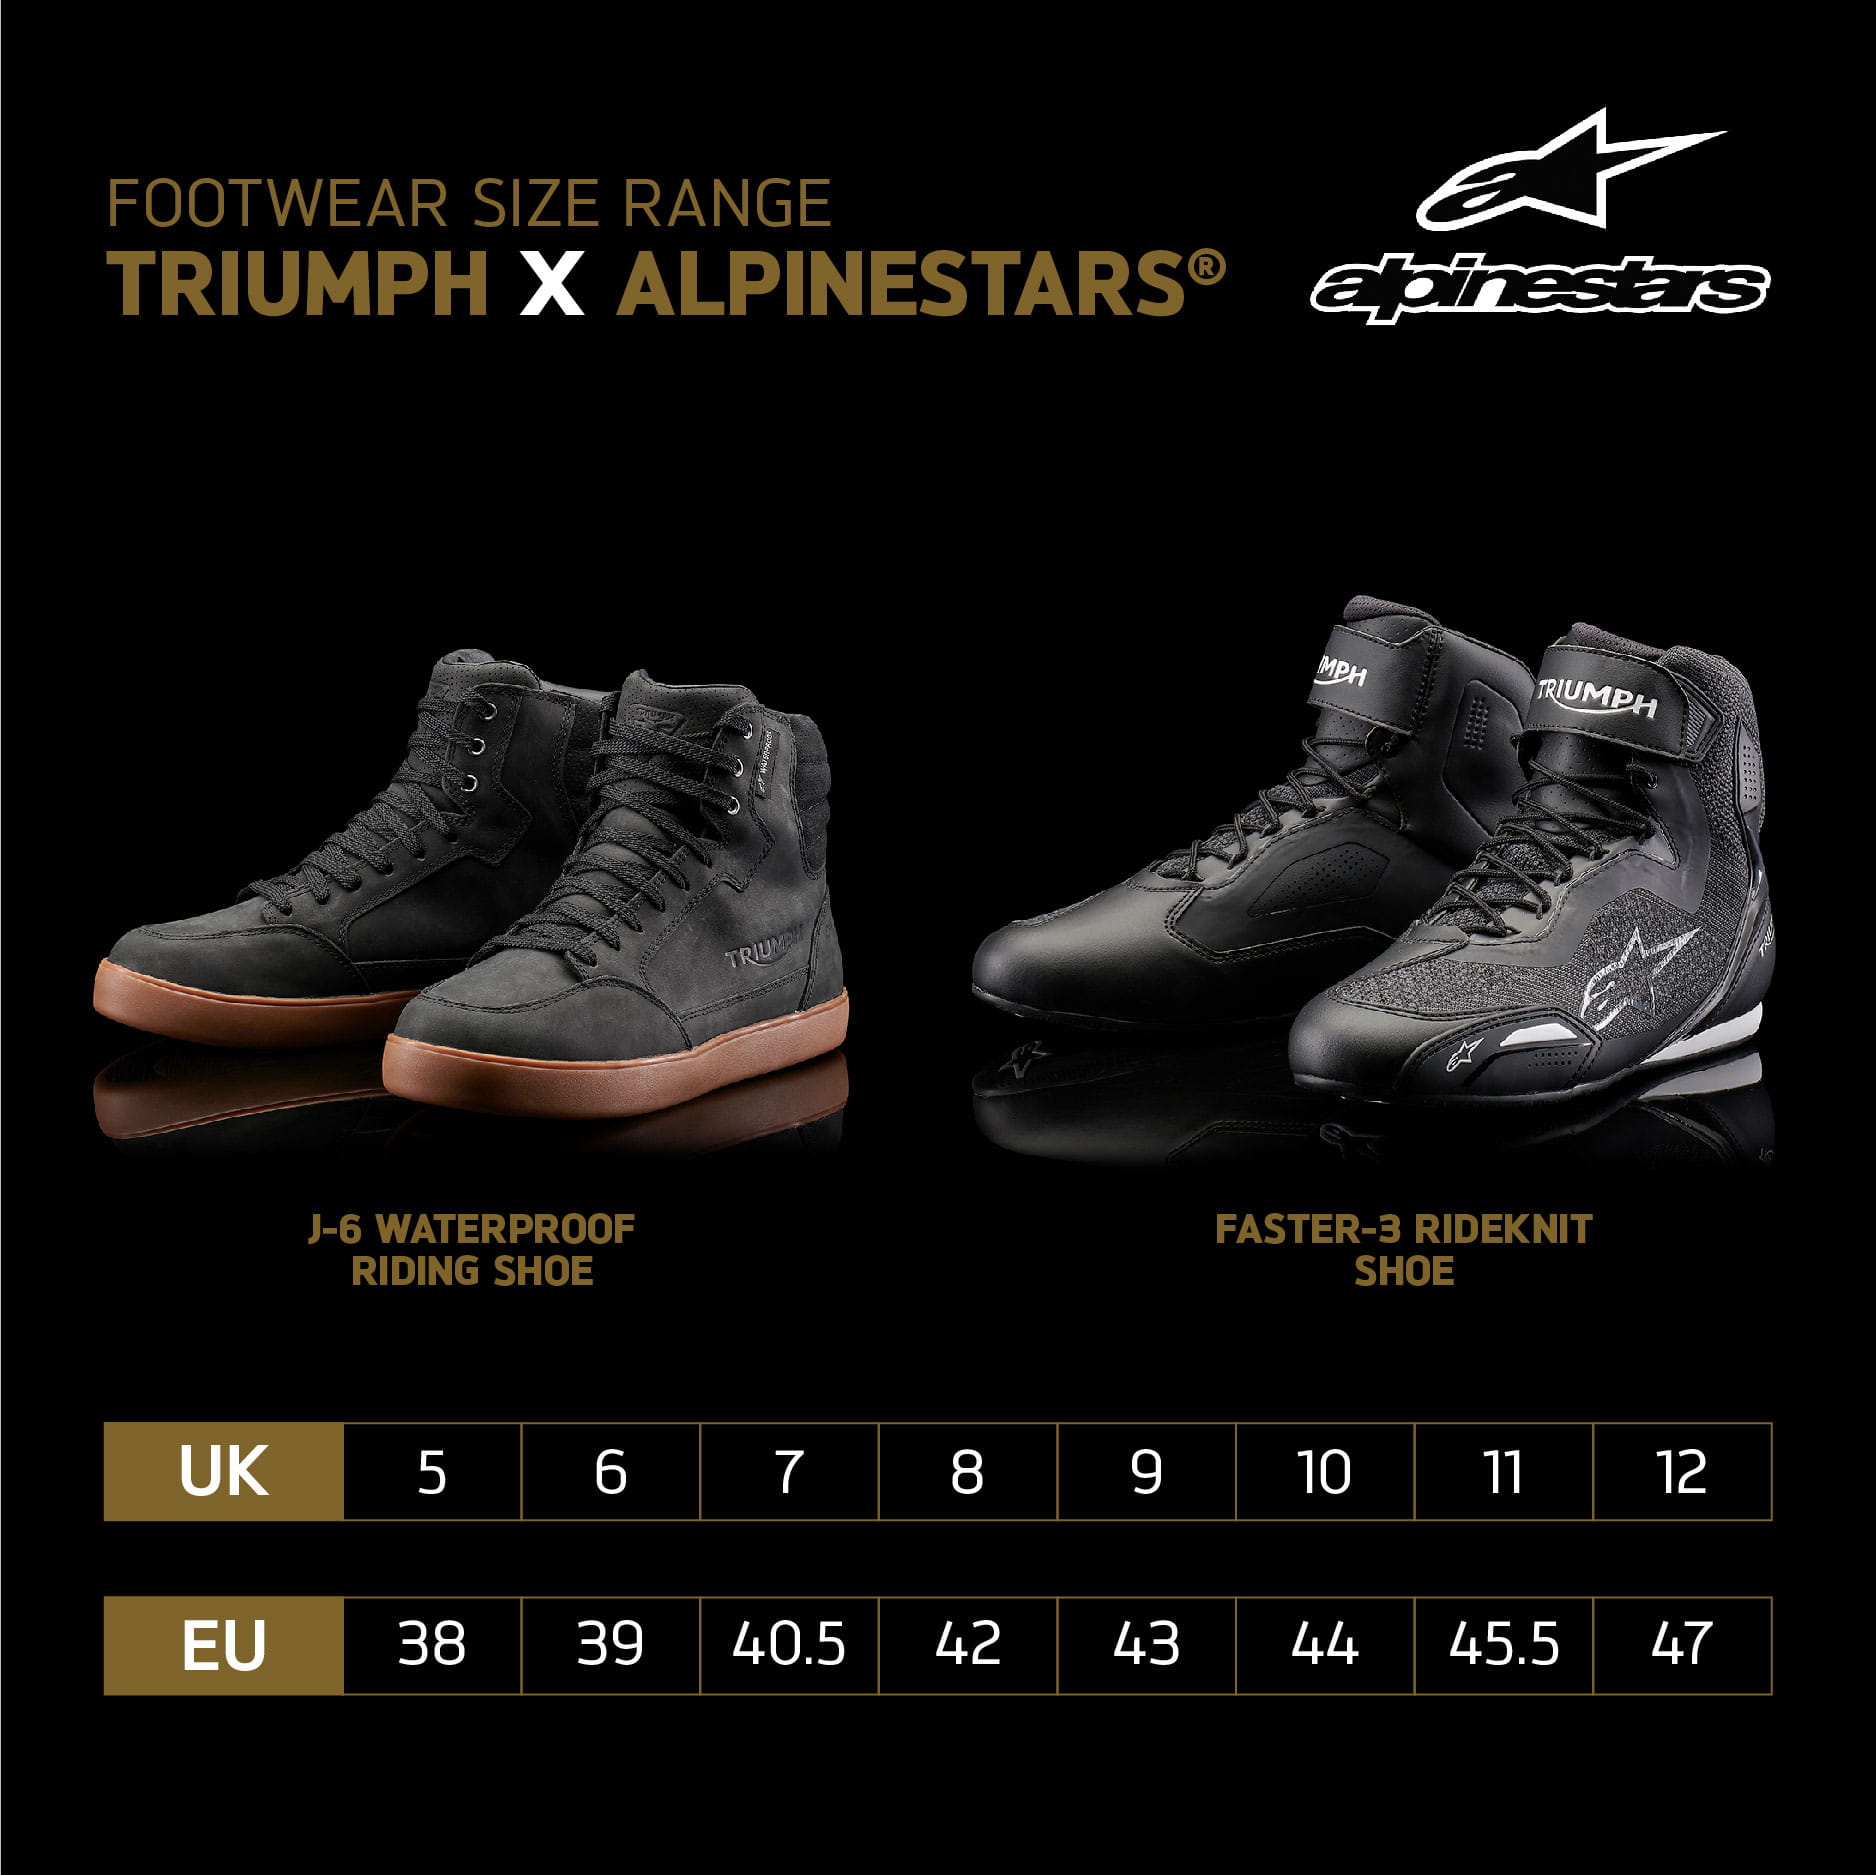 Triumph x Alpinestars® - Faster-3 Rideknit Schuh